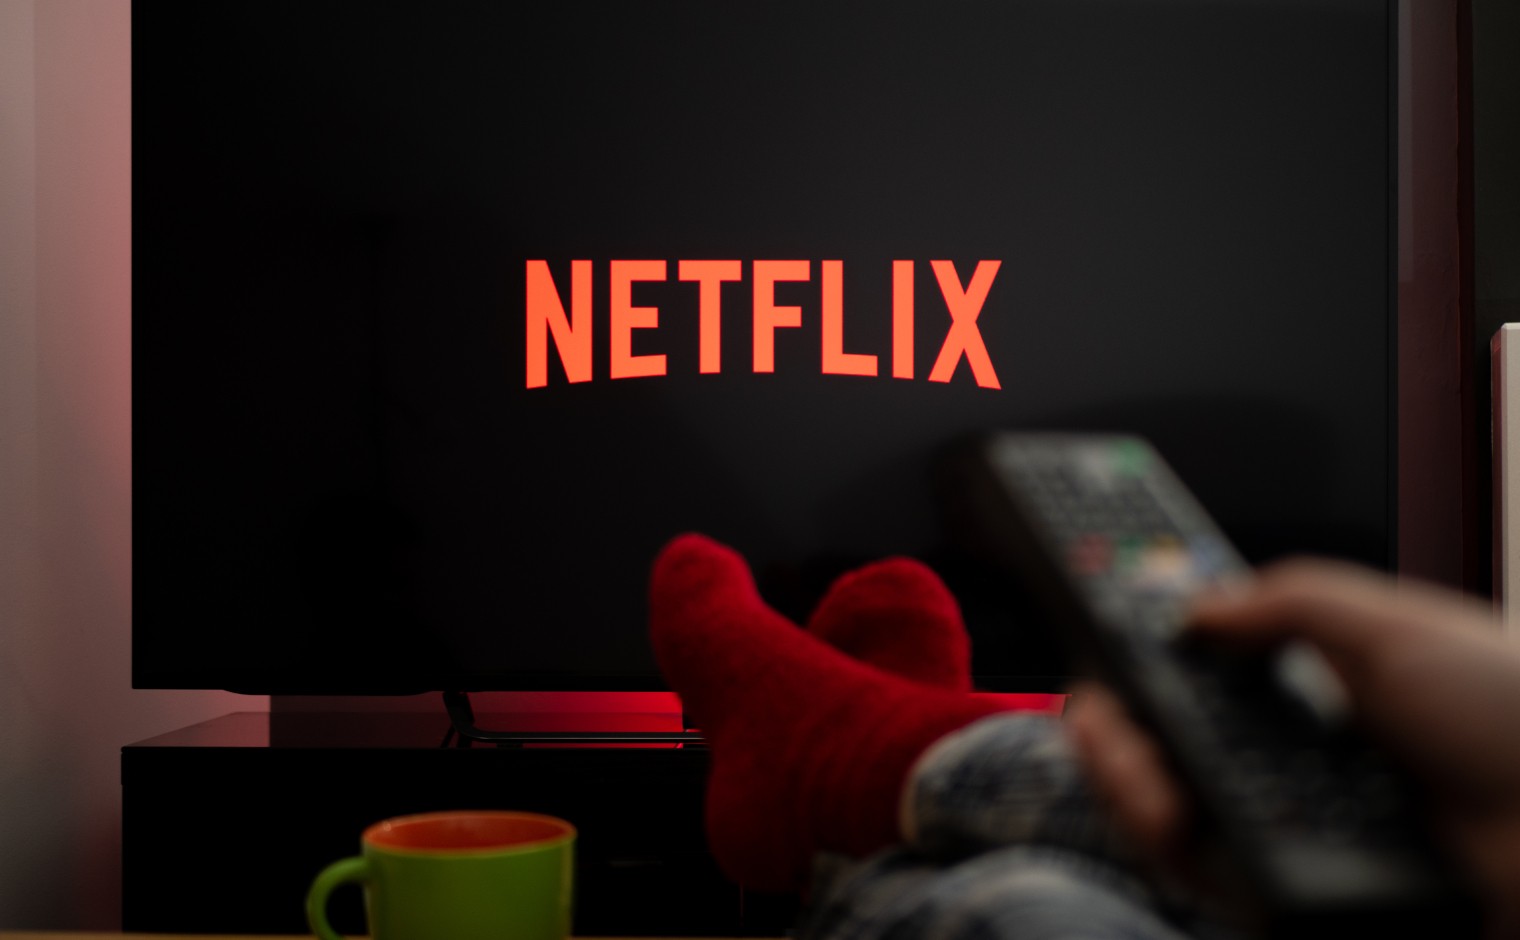 Het logo van Netflix op een televisie.